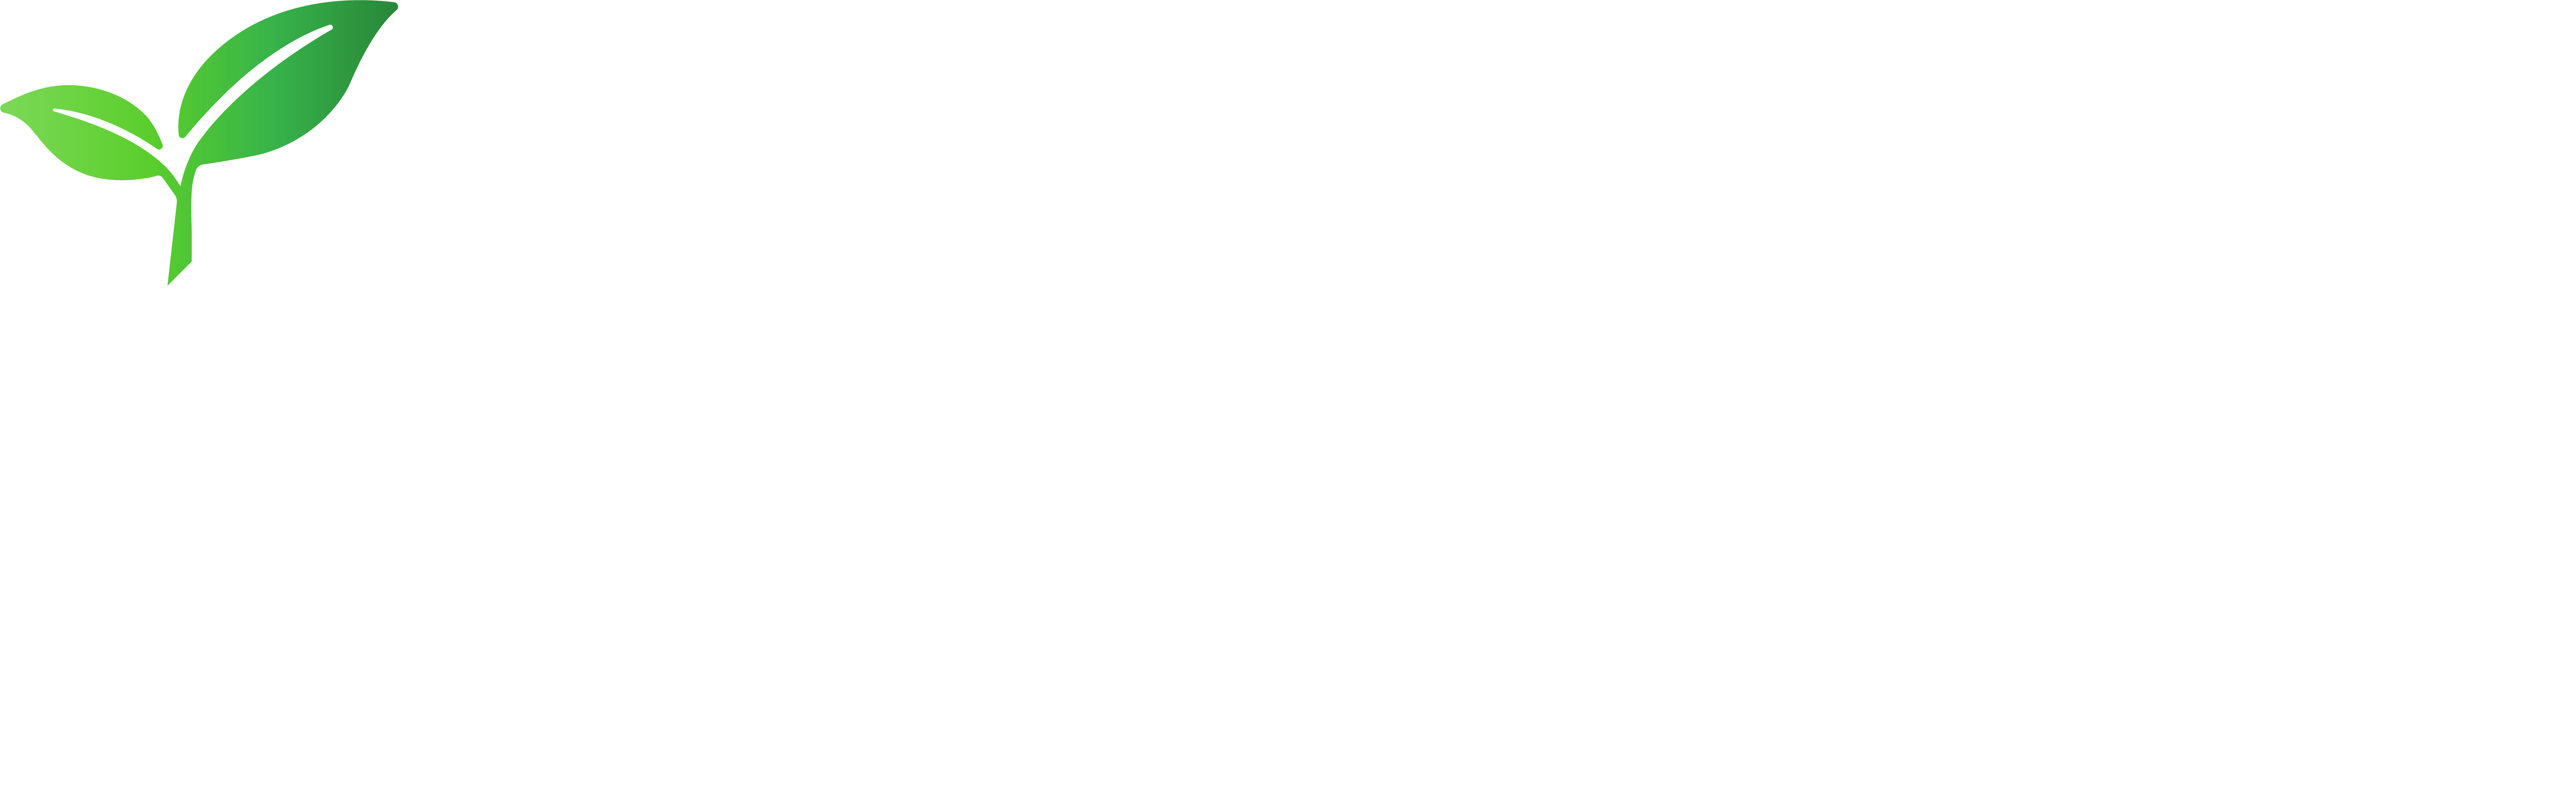 Howell Logo - Home Howell Group